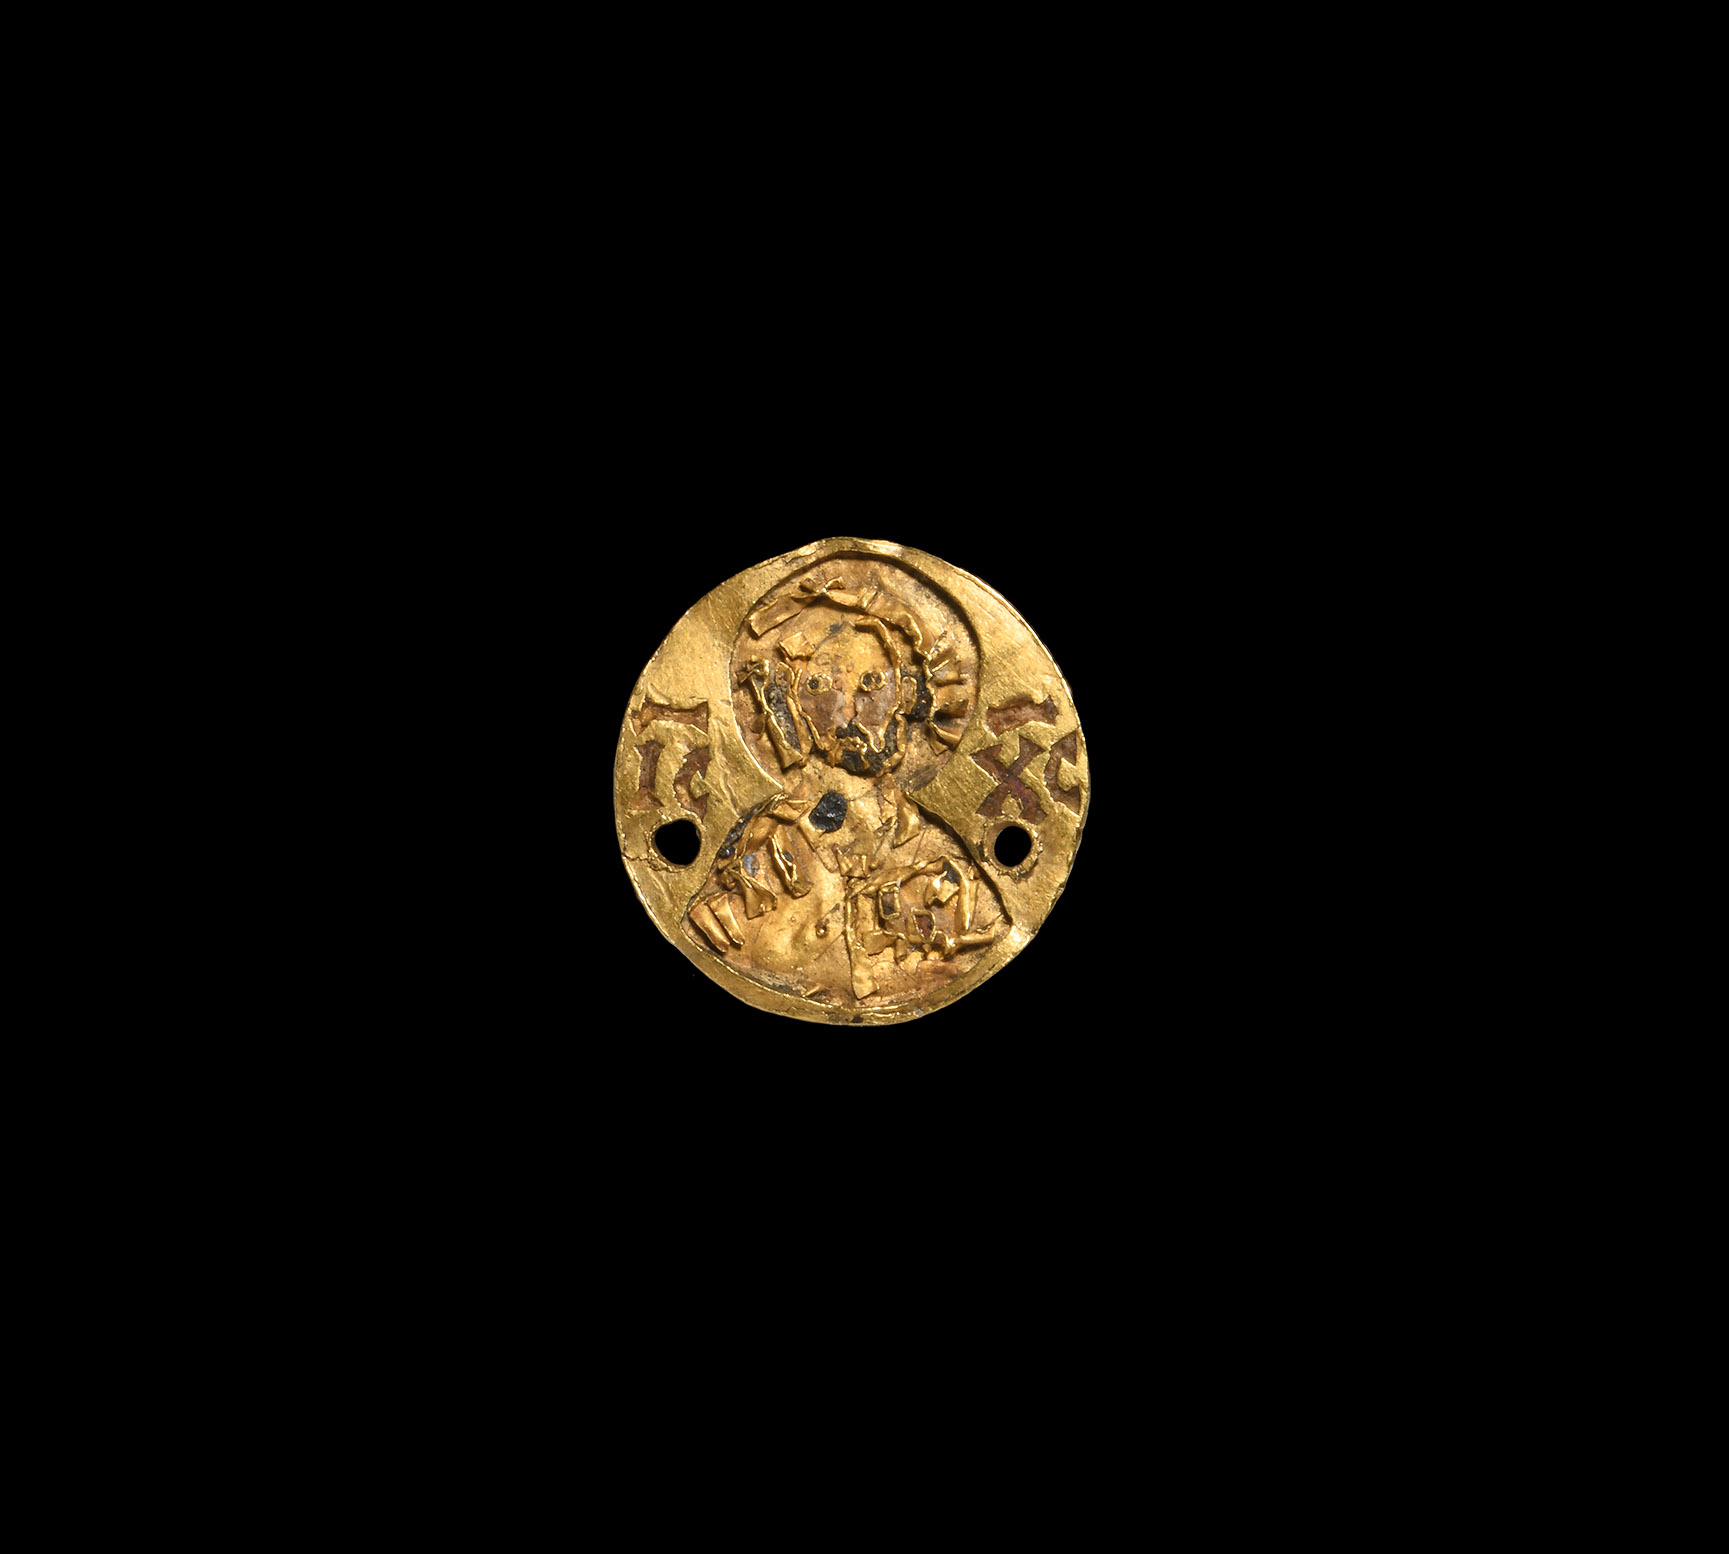 Byzantine Gold Mount with Jesus